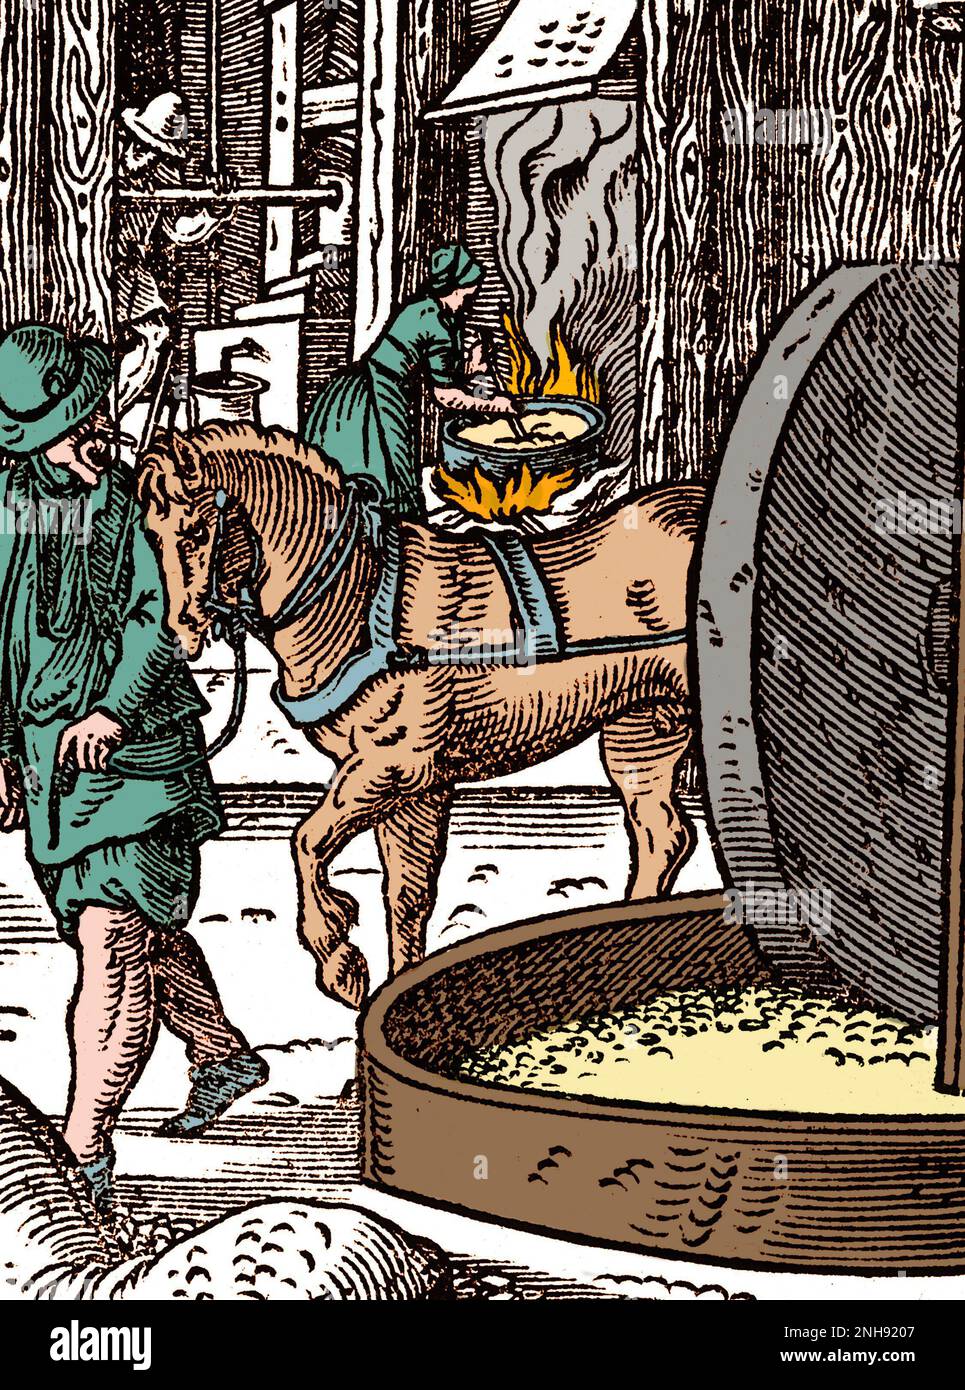 Eine Werkstatt, in der Öle aus Bäumen, Nüssen, Beeren usw. für Lebensmittel und Medizin hergestellt werden. Woodcut aus Jost Ammans Handelsbuch, 1568. Gefärbt. Stockfoto